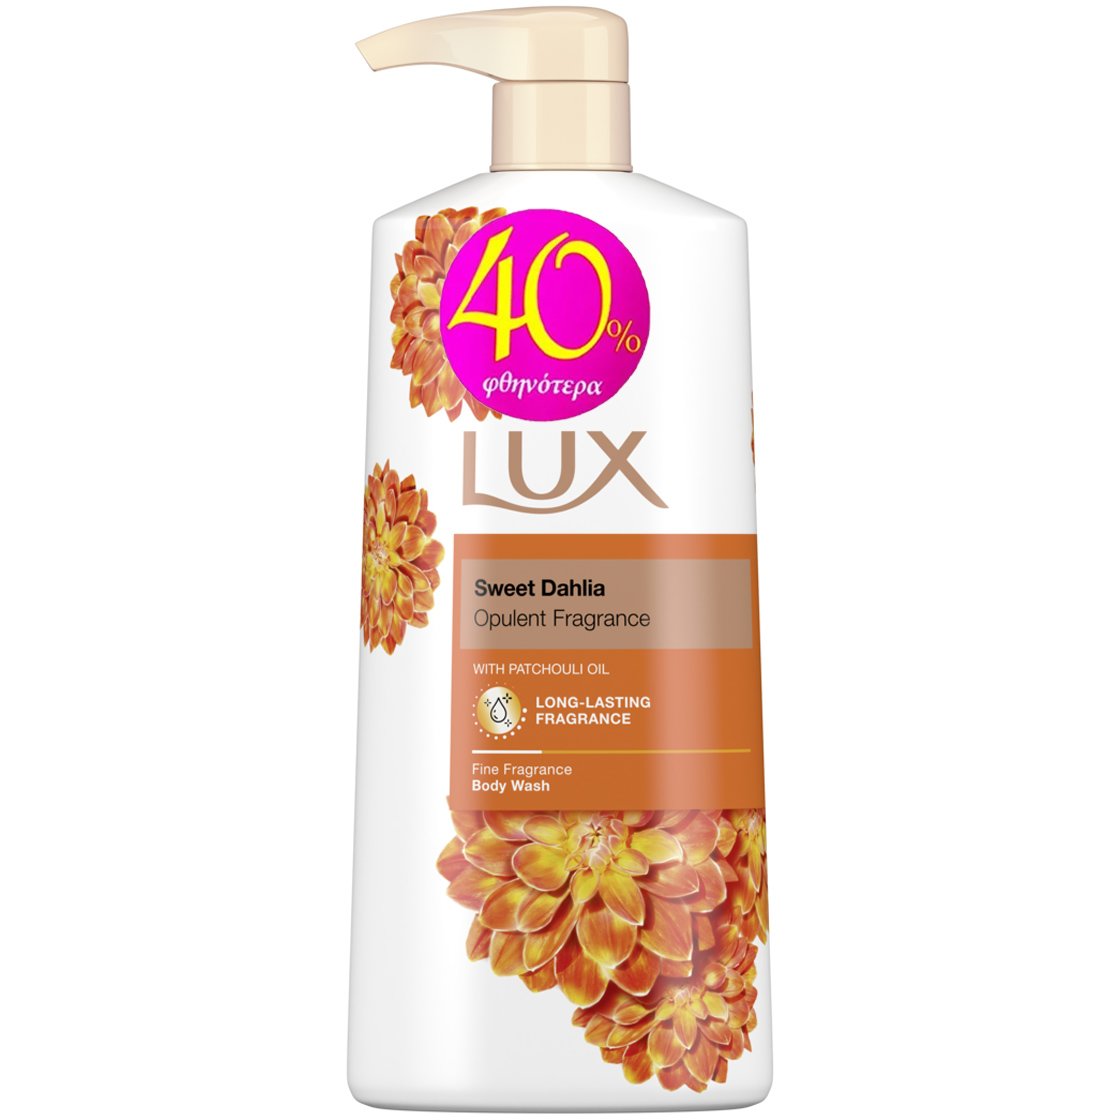 Lux Sweet Dahlia Opulent Fragrance Body Wash Αφρόλουτρο με Γοητευτικό Άρωμα από Άνθη Εξωτικών Λουλουδιών για Βελούδινη Επιδερμίδα 600ml Promo -40%